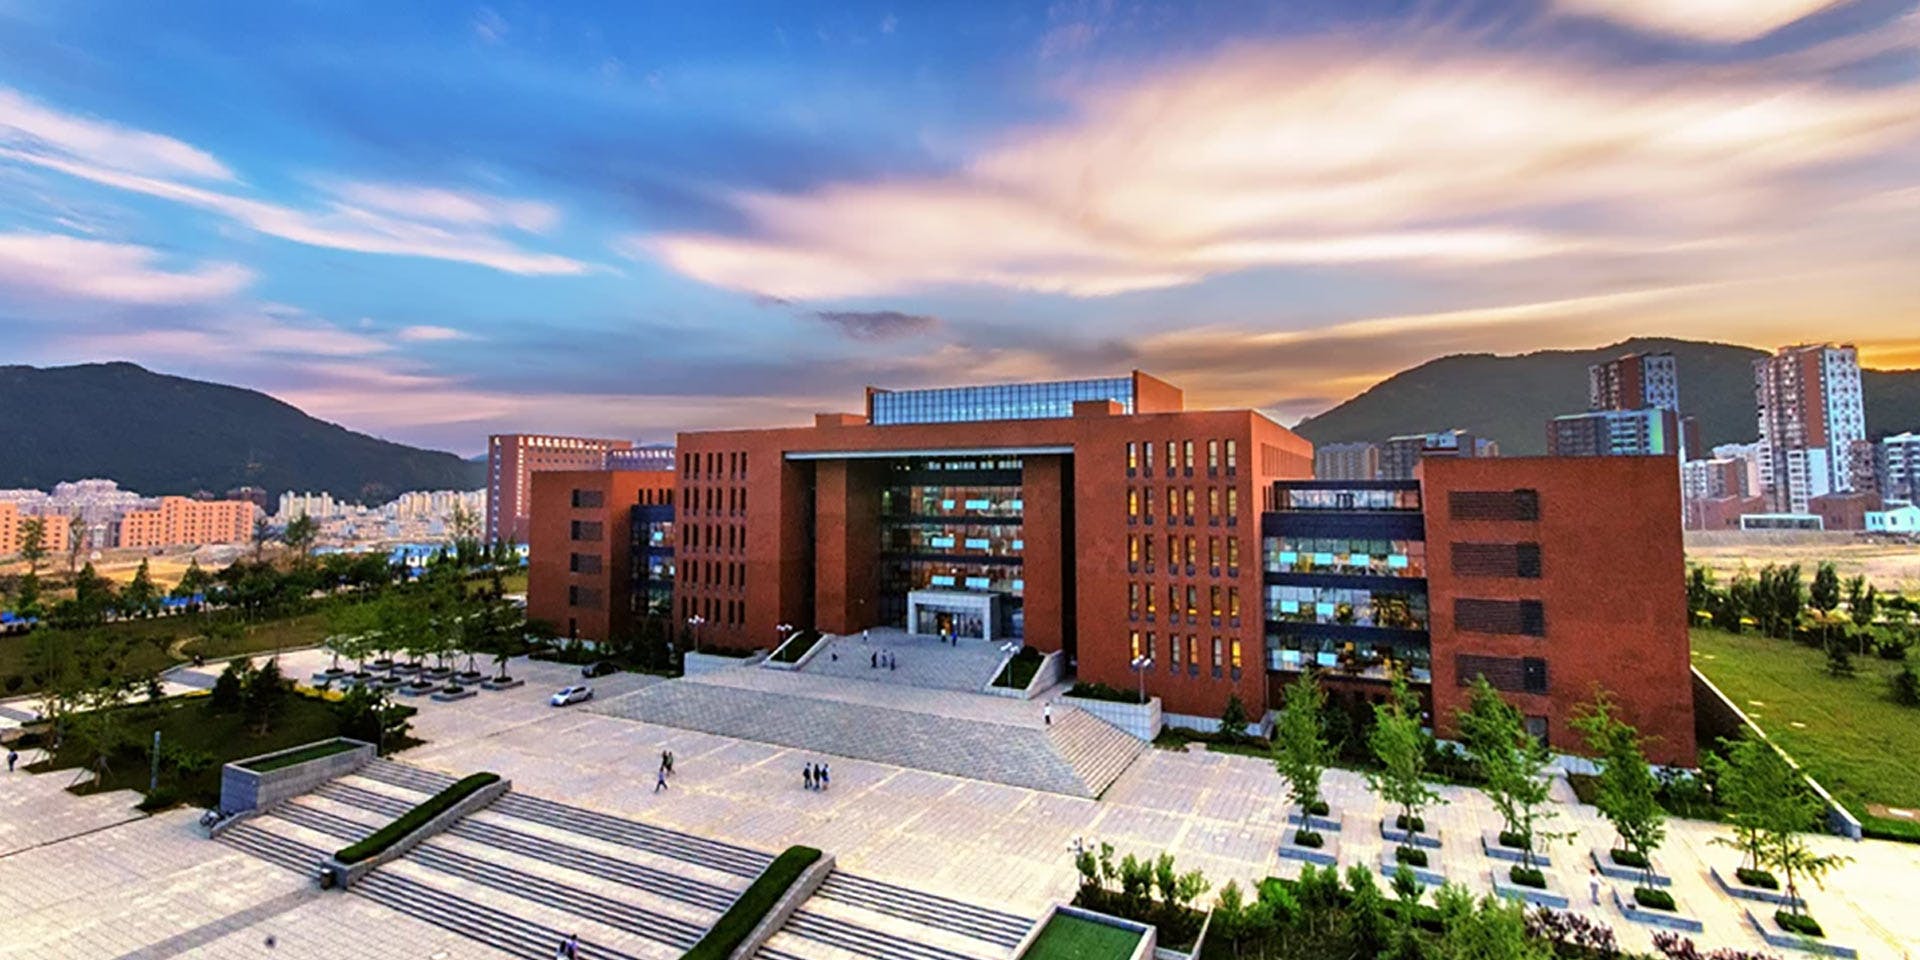 Dalian University of Technology